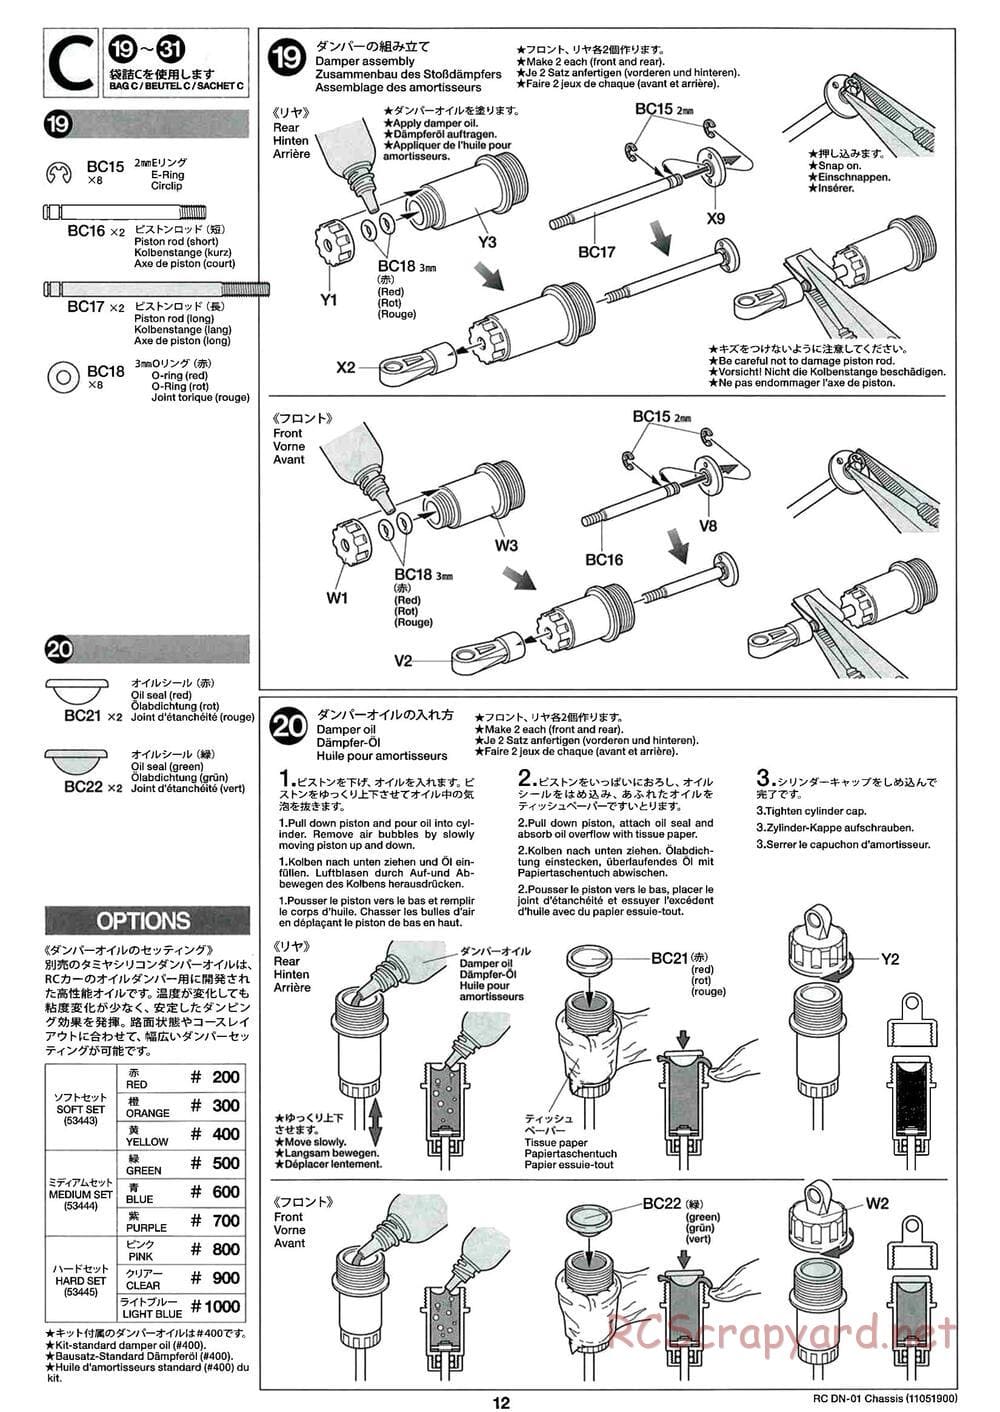 Tamiya - DN-01 Chassis - Manual - Page 12